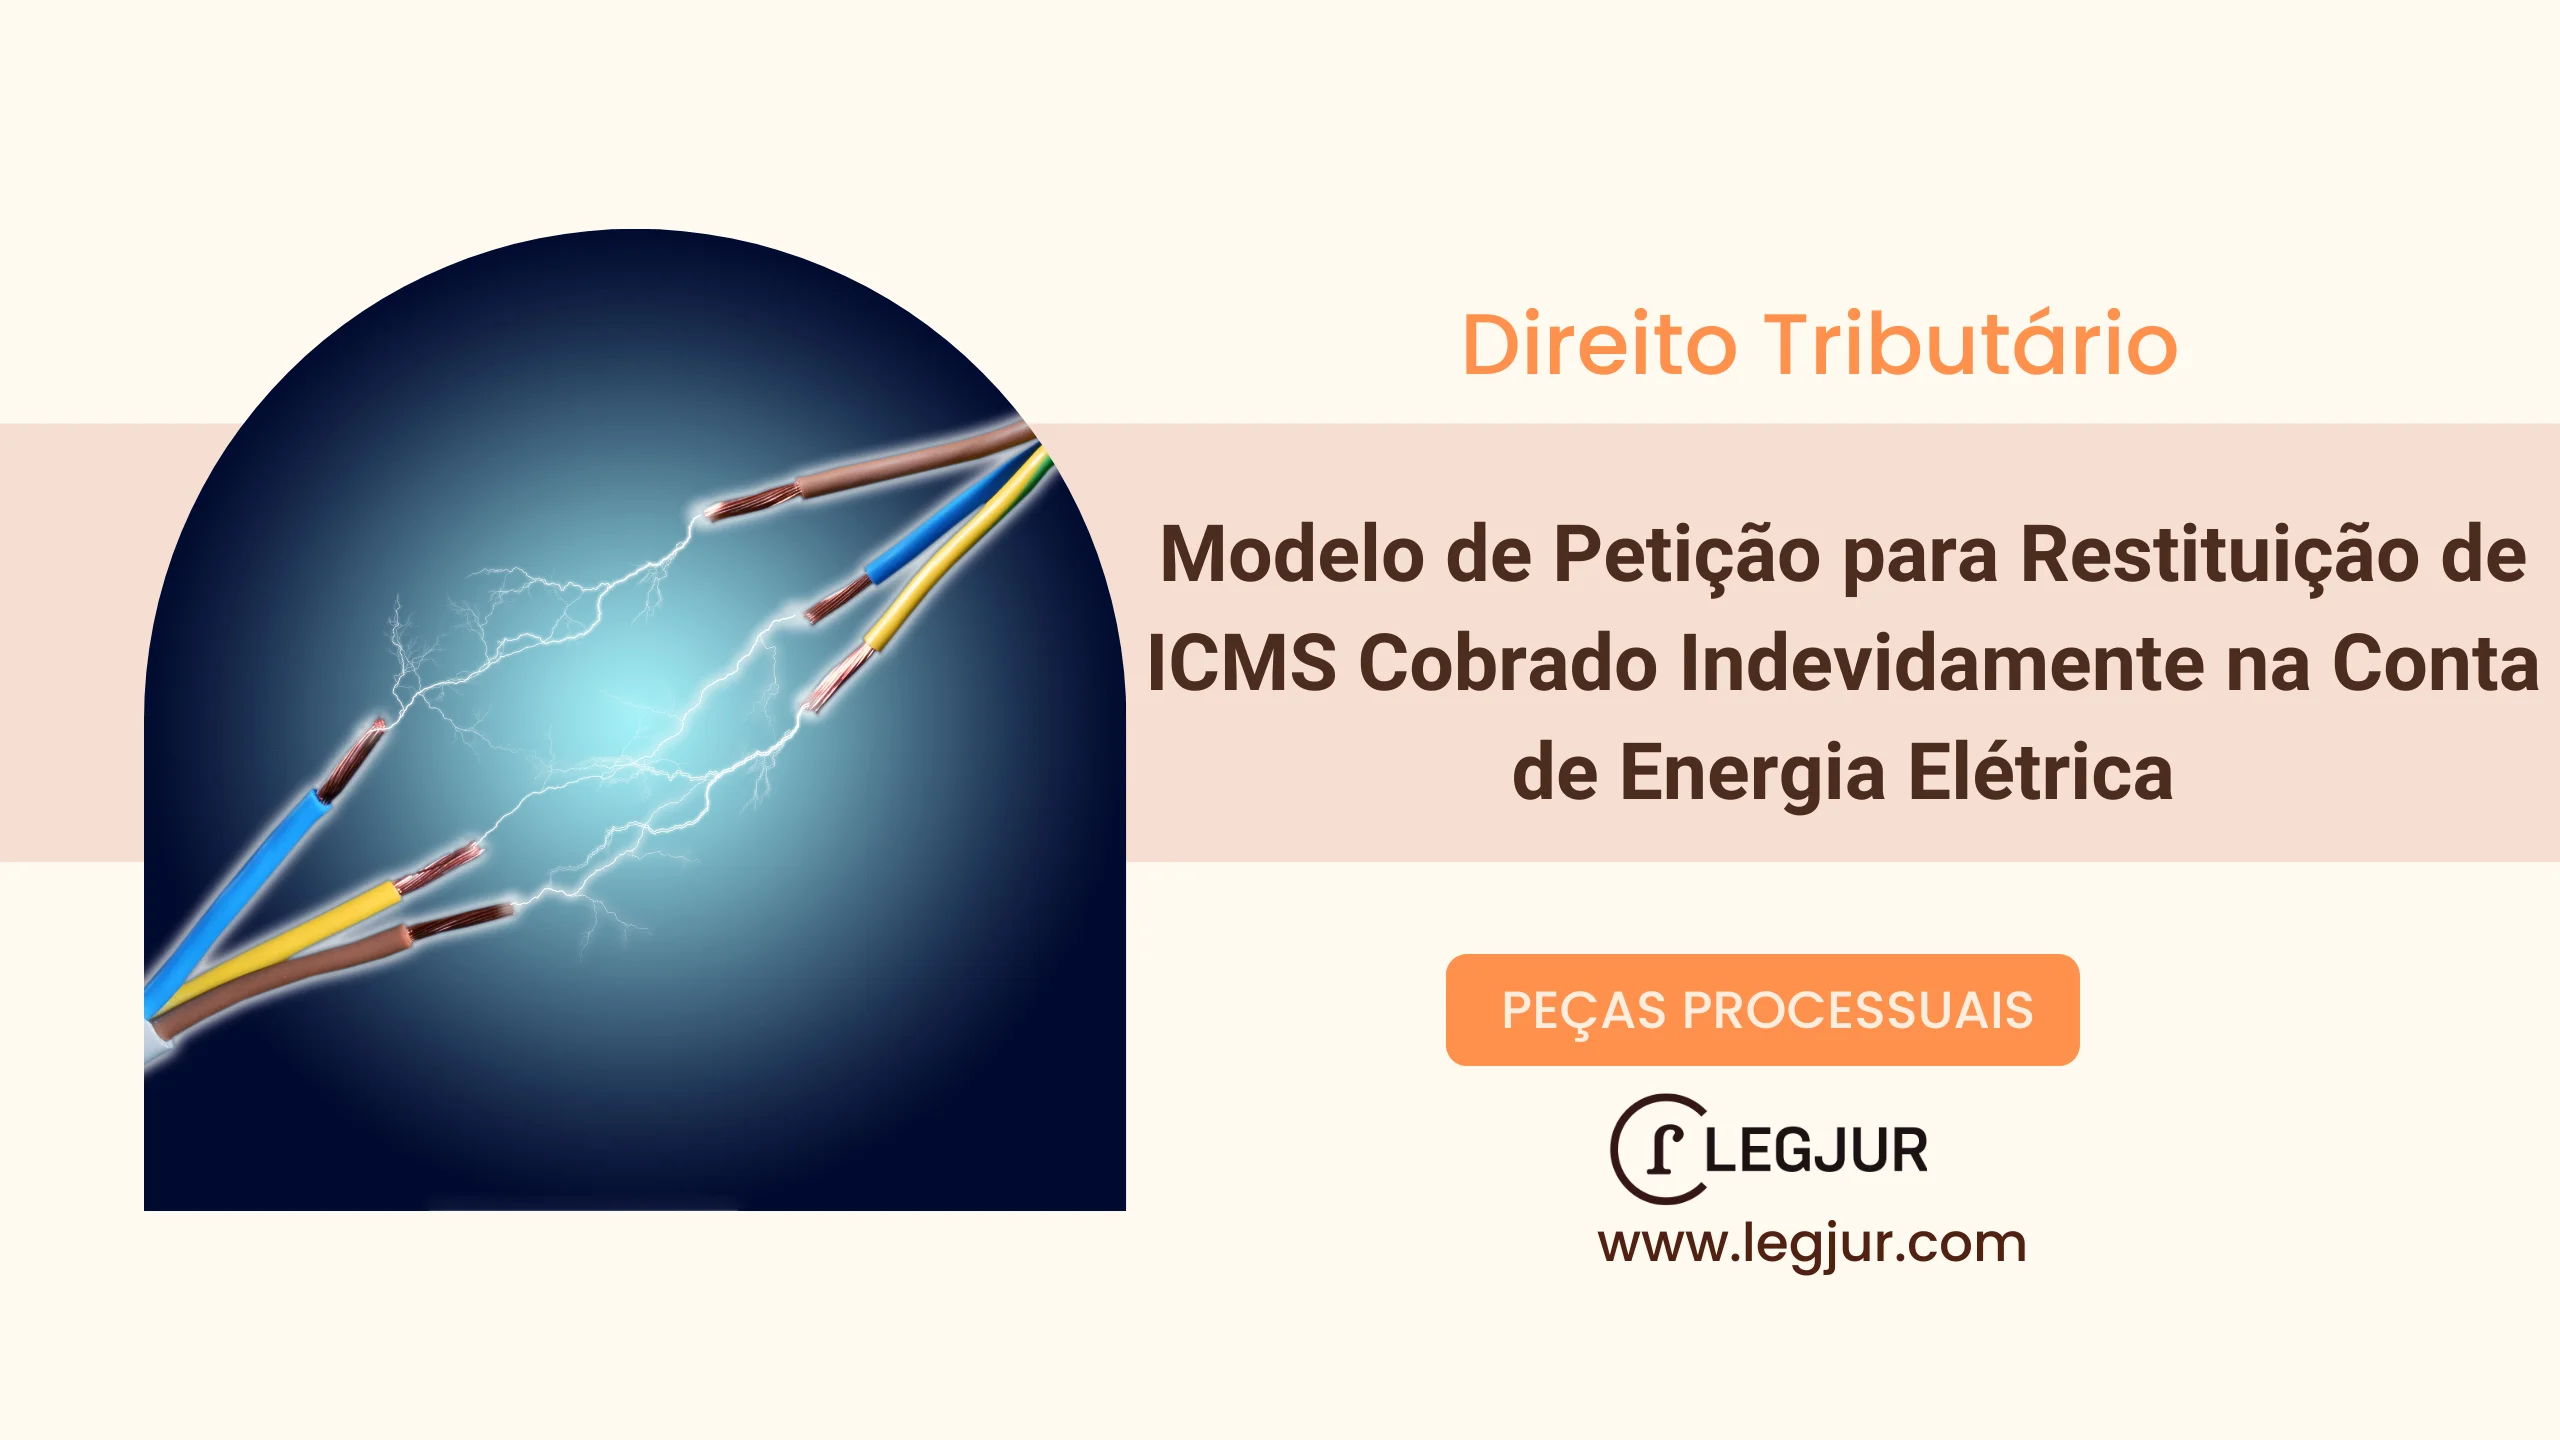 Modelo de Petição para Restituição de ICMS Cobrado Indevidamente na Conta de Energia Elétrica